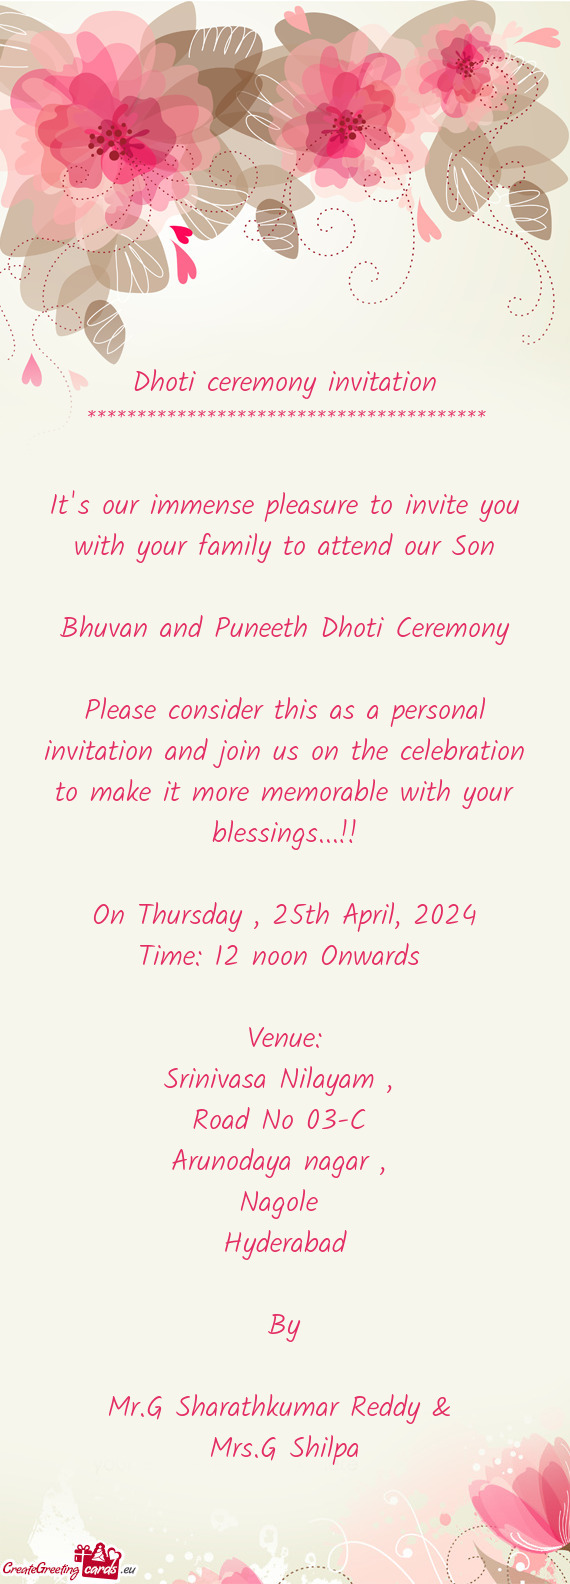 Bhuvan and Puneeth Dhoti Ceremony